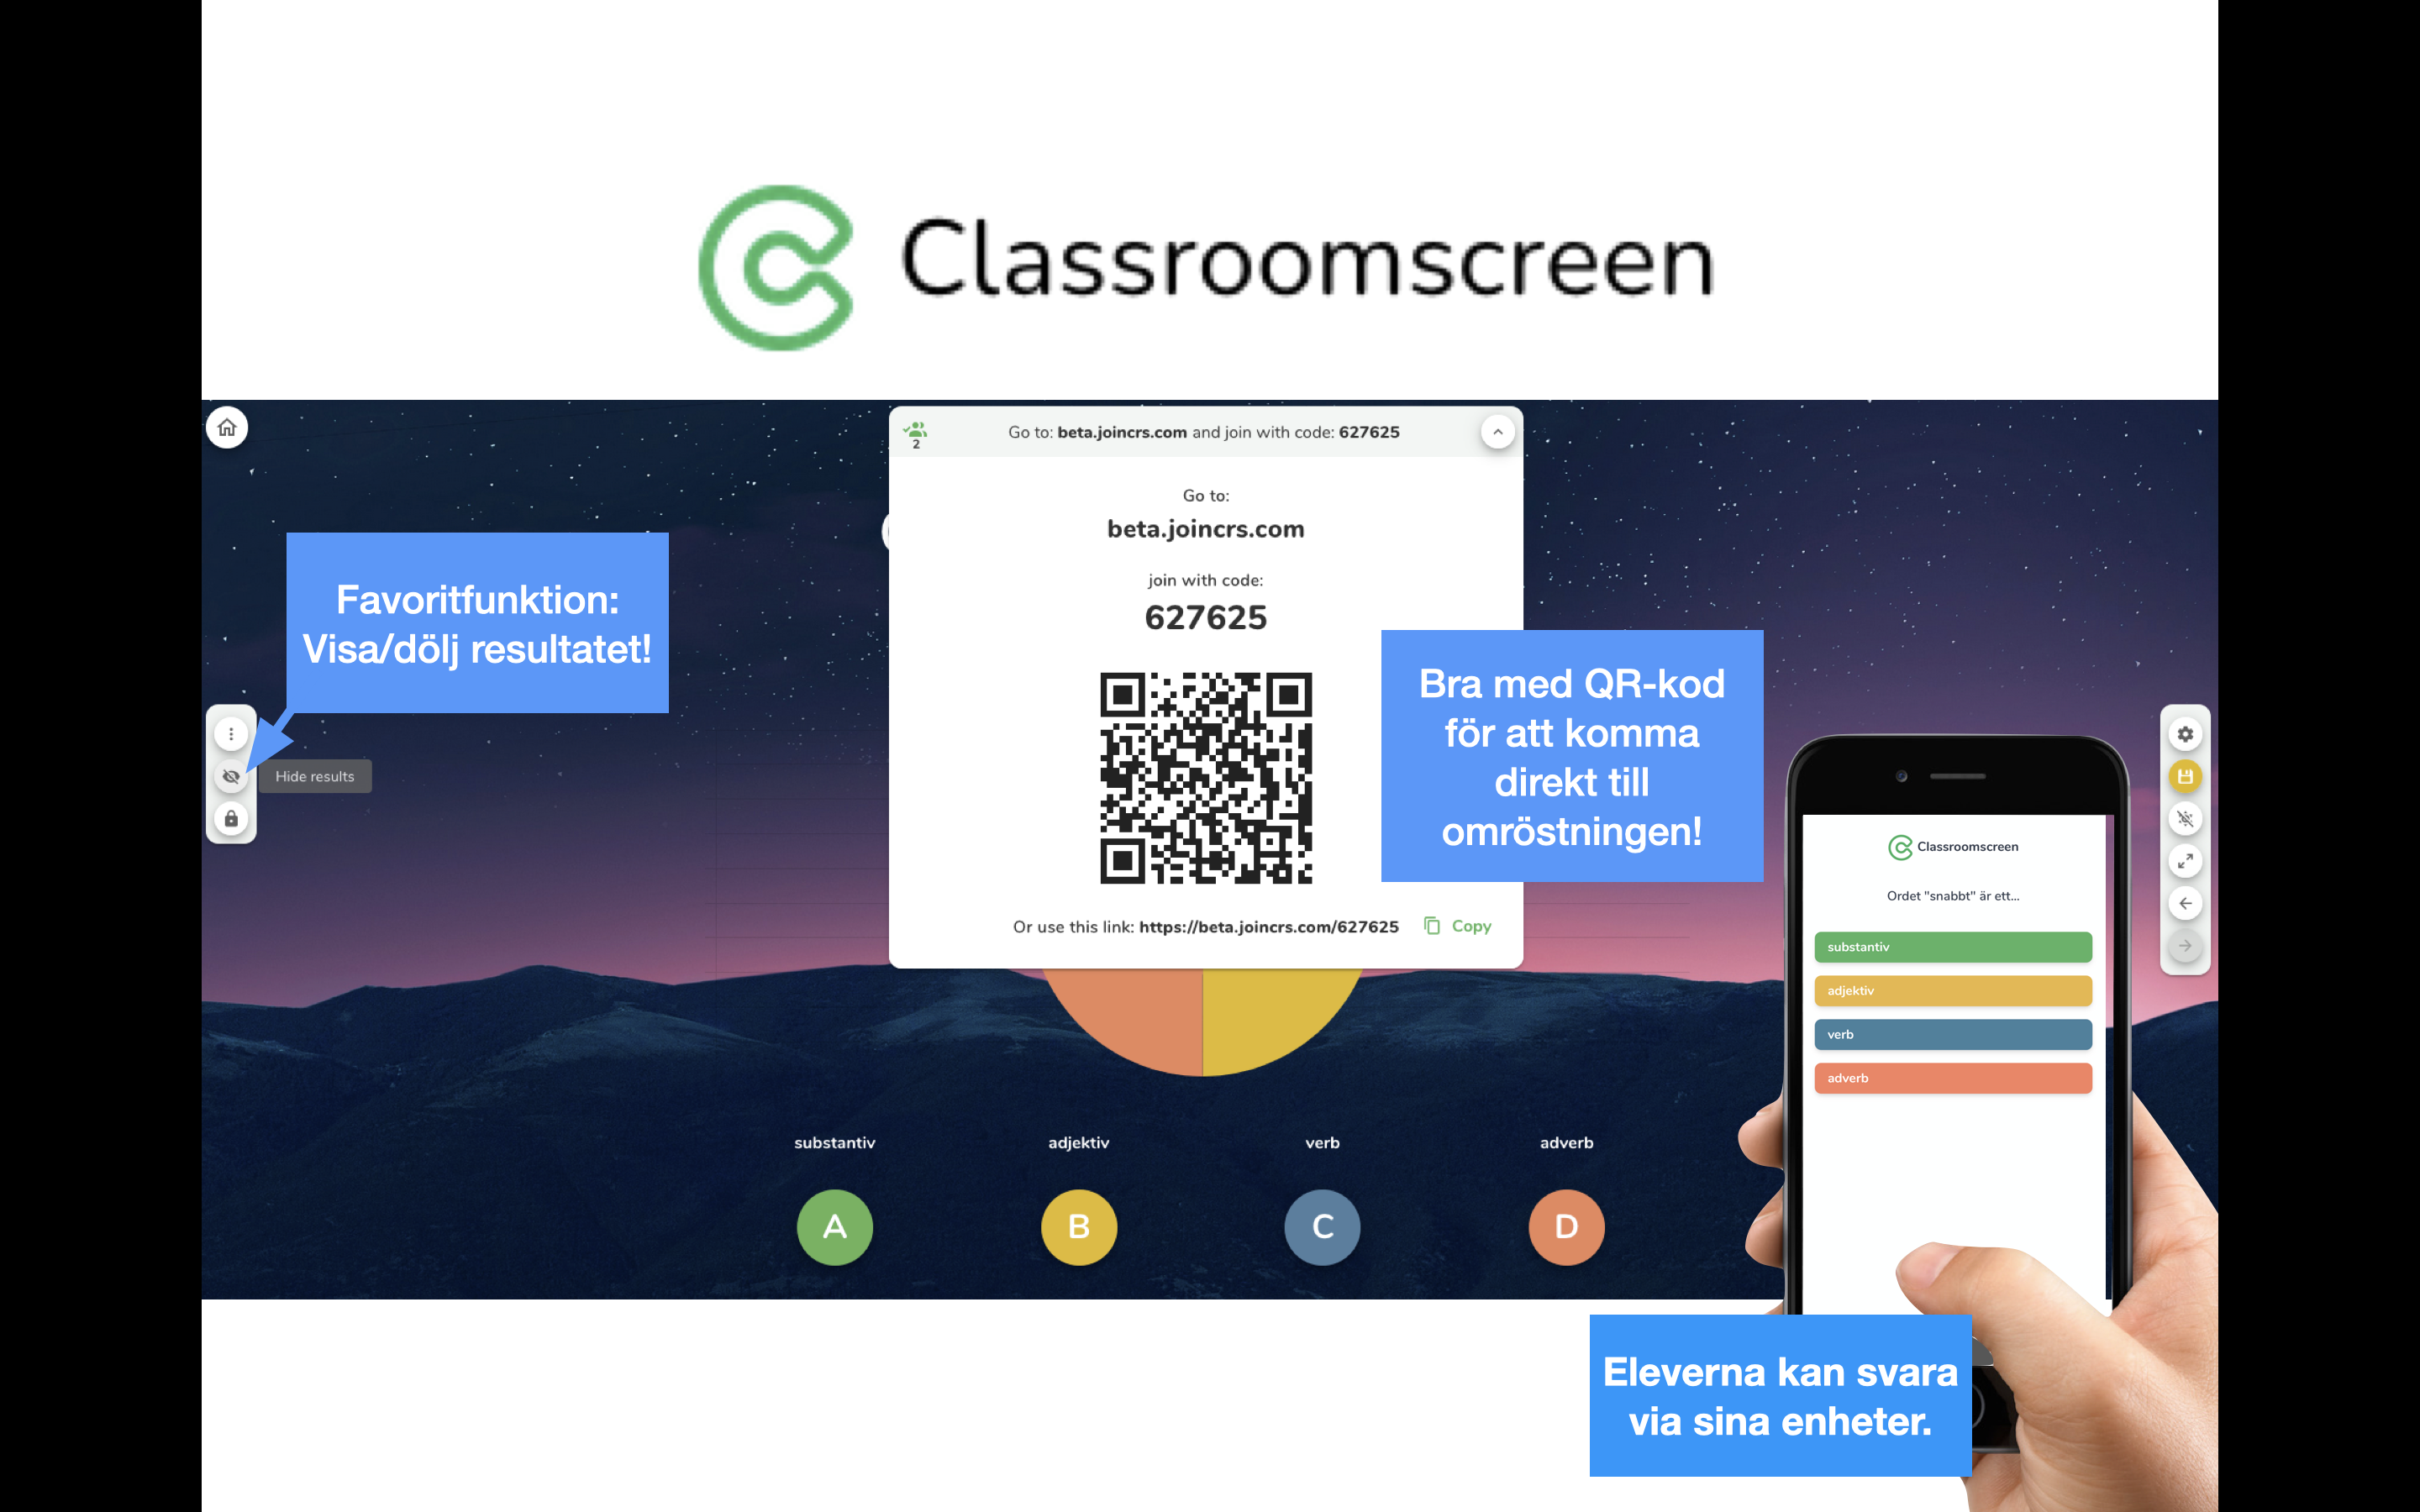 Classroom Screen – bidrar till tydlighet och struktur – Patricia Diaz